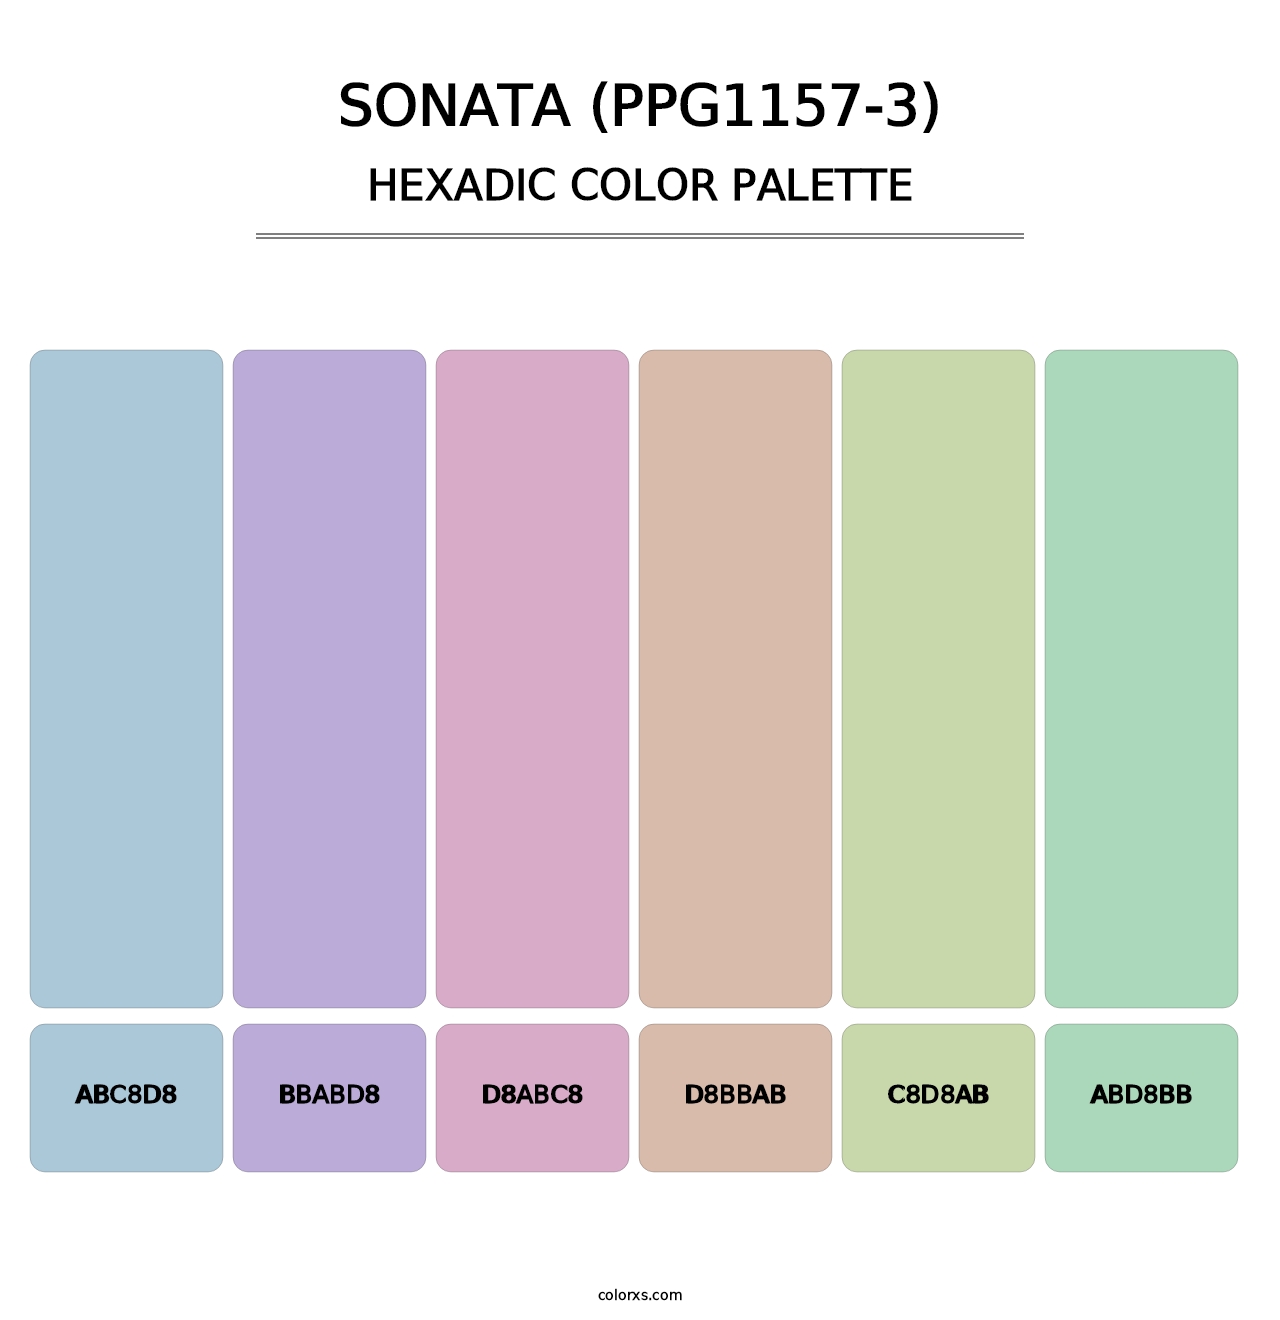 Sonata (PPG1157-3) - Hexadic Color Palette